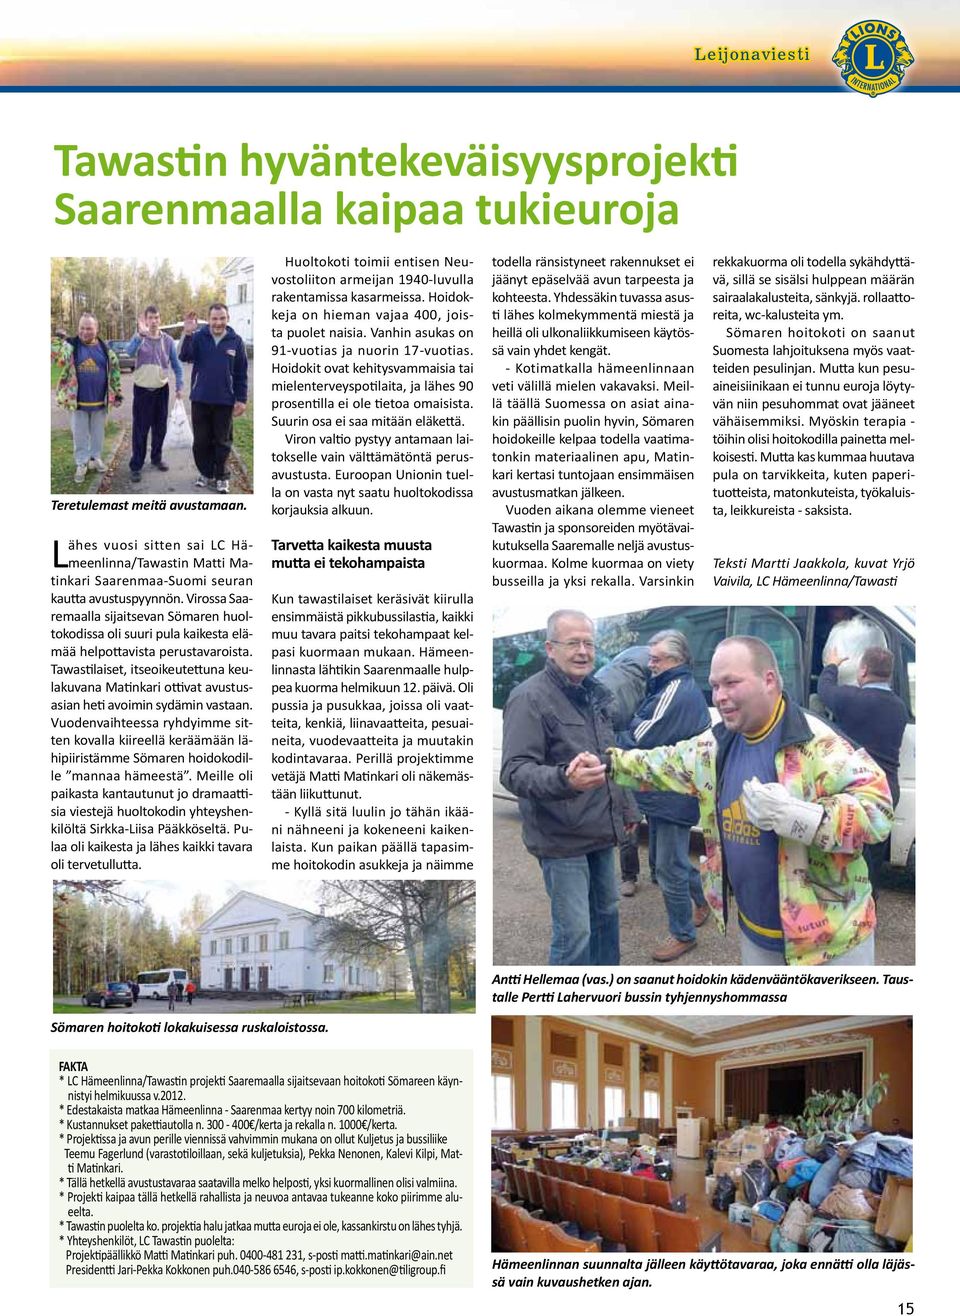 Virossa Saaremaalla sijaitsevan Sömaren huoltokodissa oli suuri pula kaikesta elämää helpottavista perustavaroista.